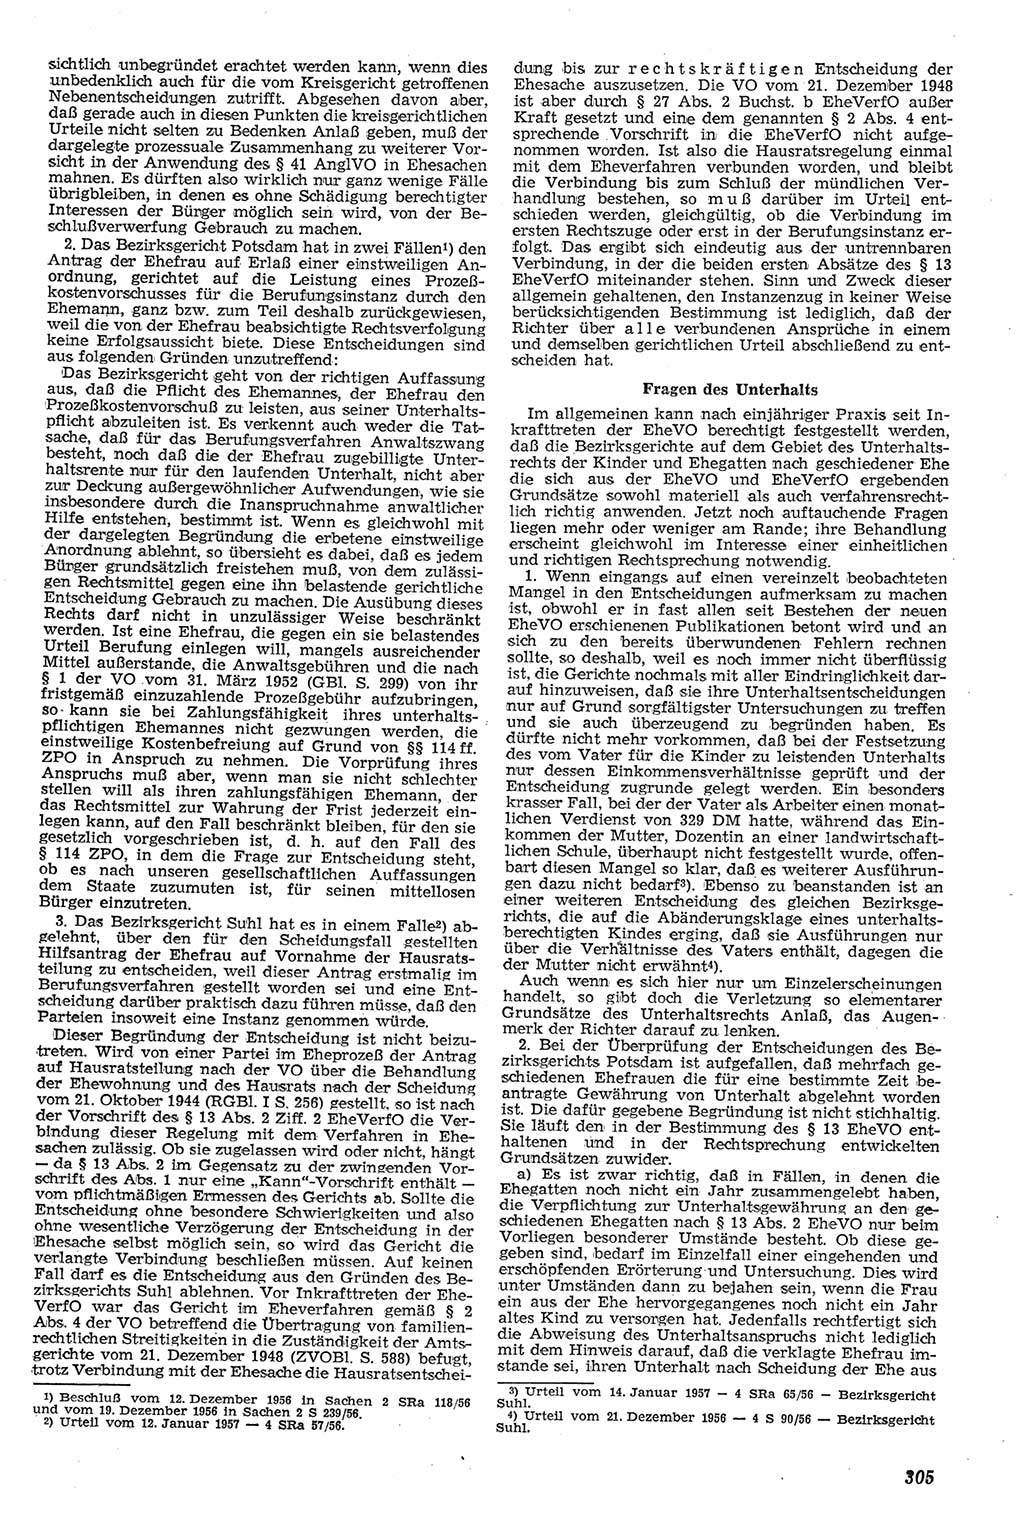 Neue Justiz (NJ), Zeitschrift für Recht und Rechtswissenschaft [Deutsche Demokratische Republik (DDR)], 11. Jahrgang 1957, Seite 305 (NJ DDR 1957, S. 305)